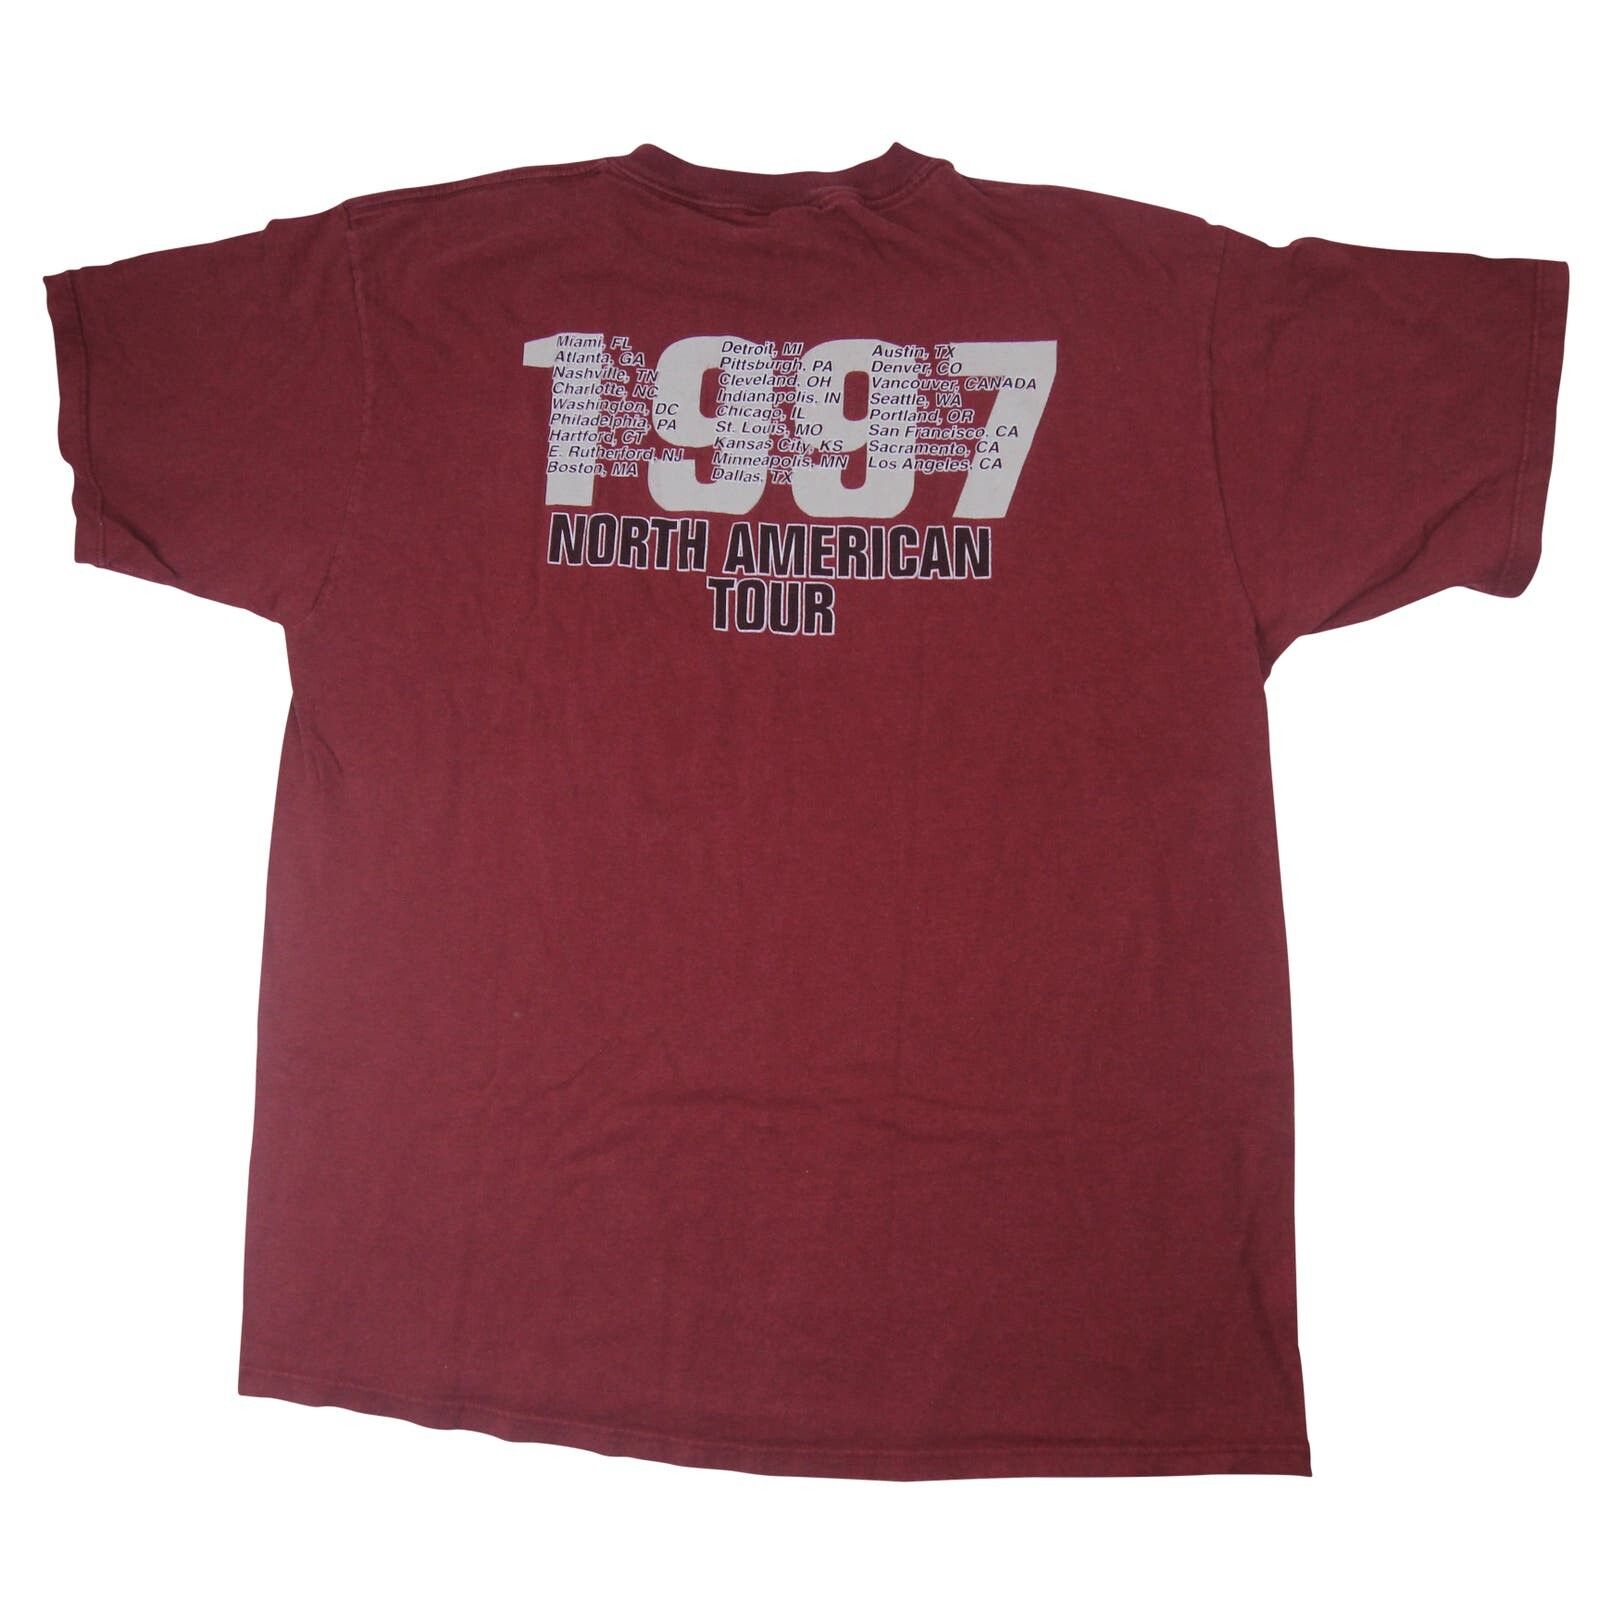 Vintage Vintage 1997 Rage Against the Machine Tour Shirt Size US XL / EU 56 / 4 - 7 Thumbnail